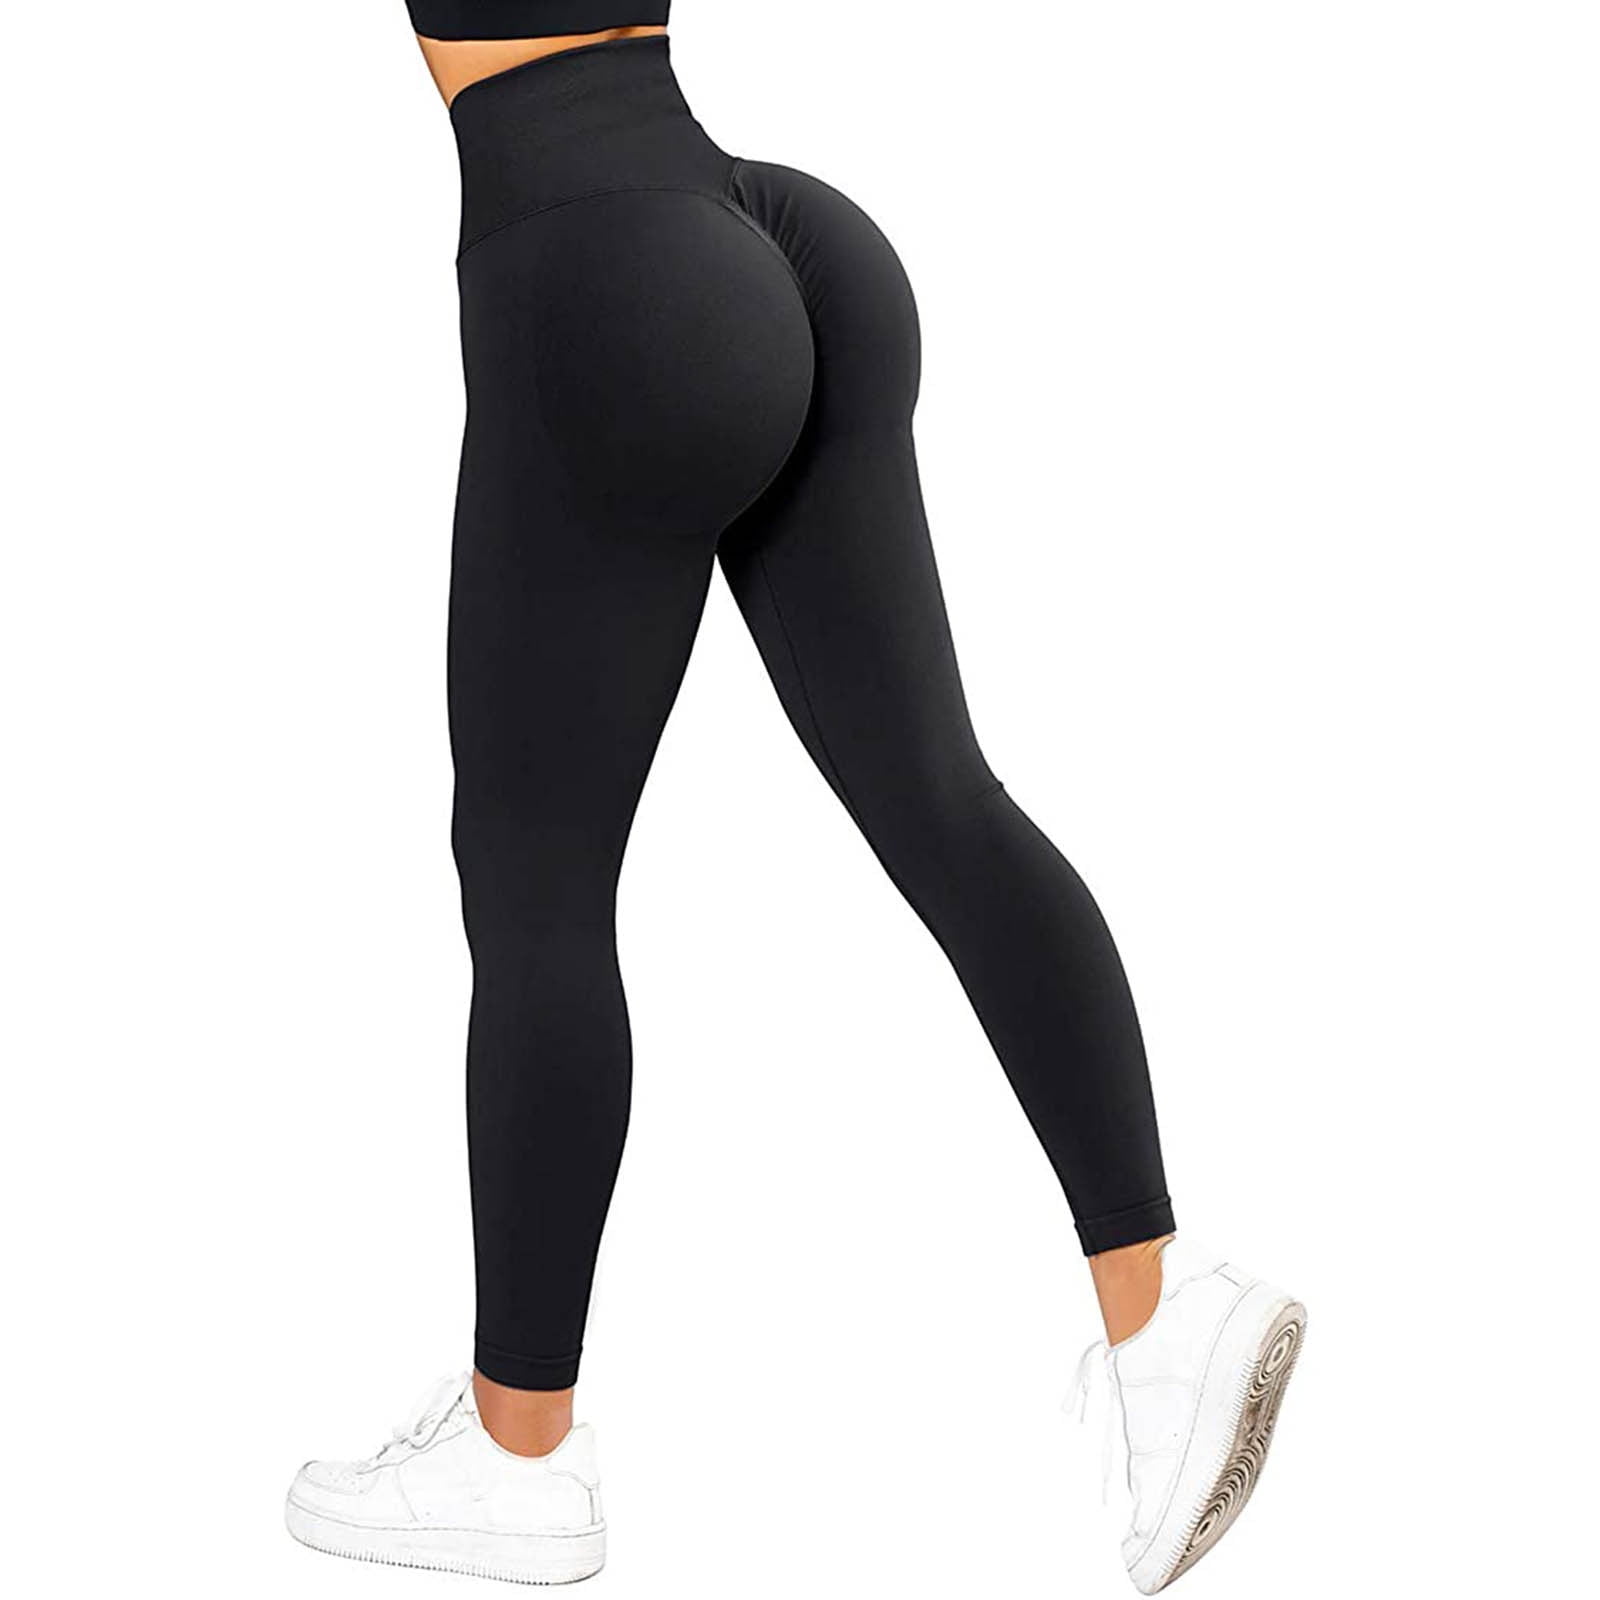 Yoga Pants 24/7 on X: #yogapants #workout #gym  / X